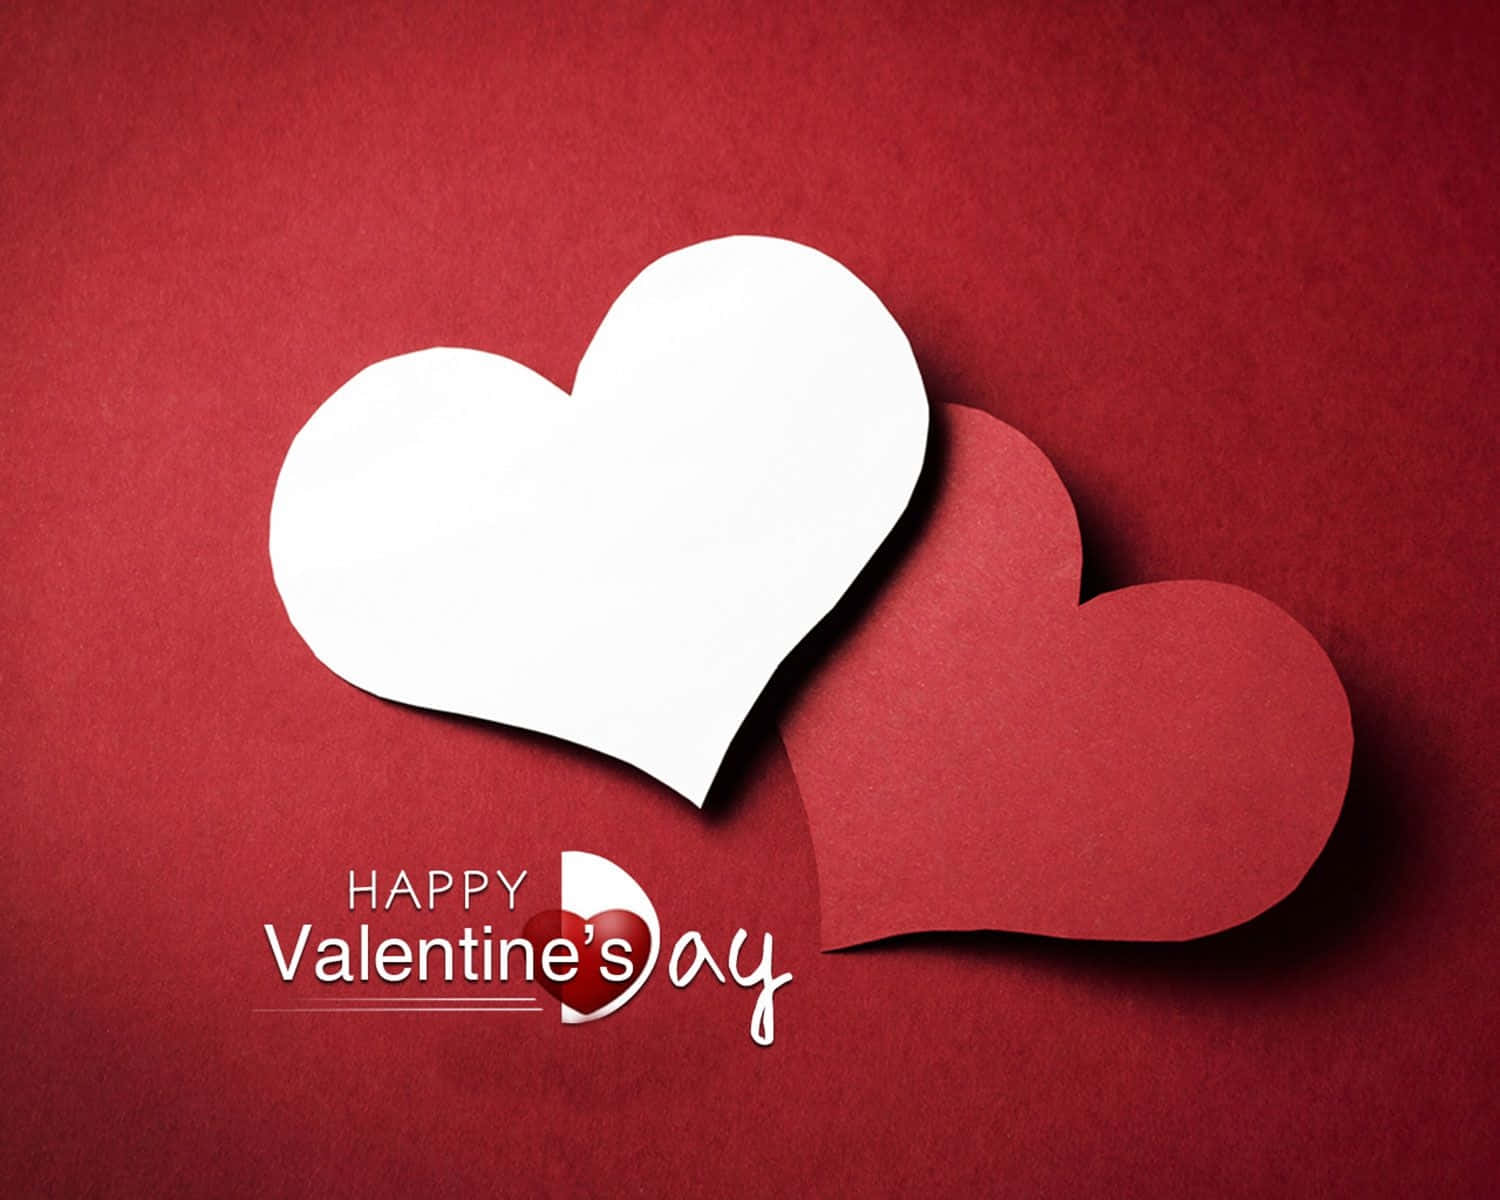 Zeigensie Ihre Liebe An Diesem Valentinstag Wallpaper